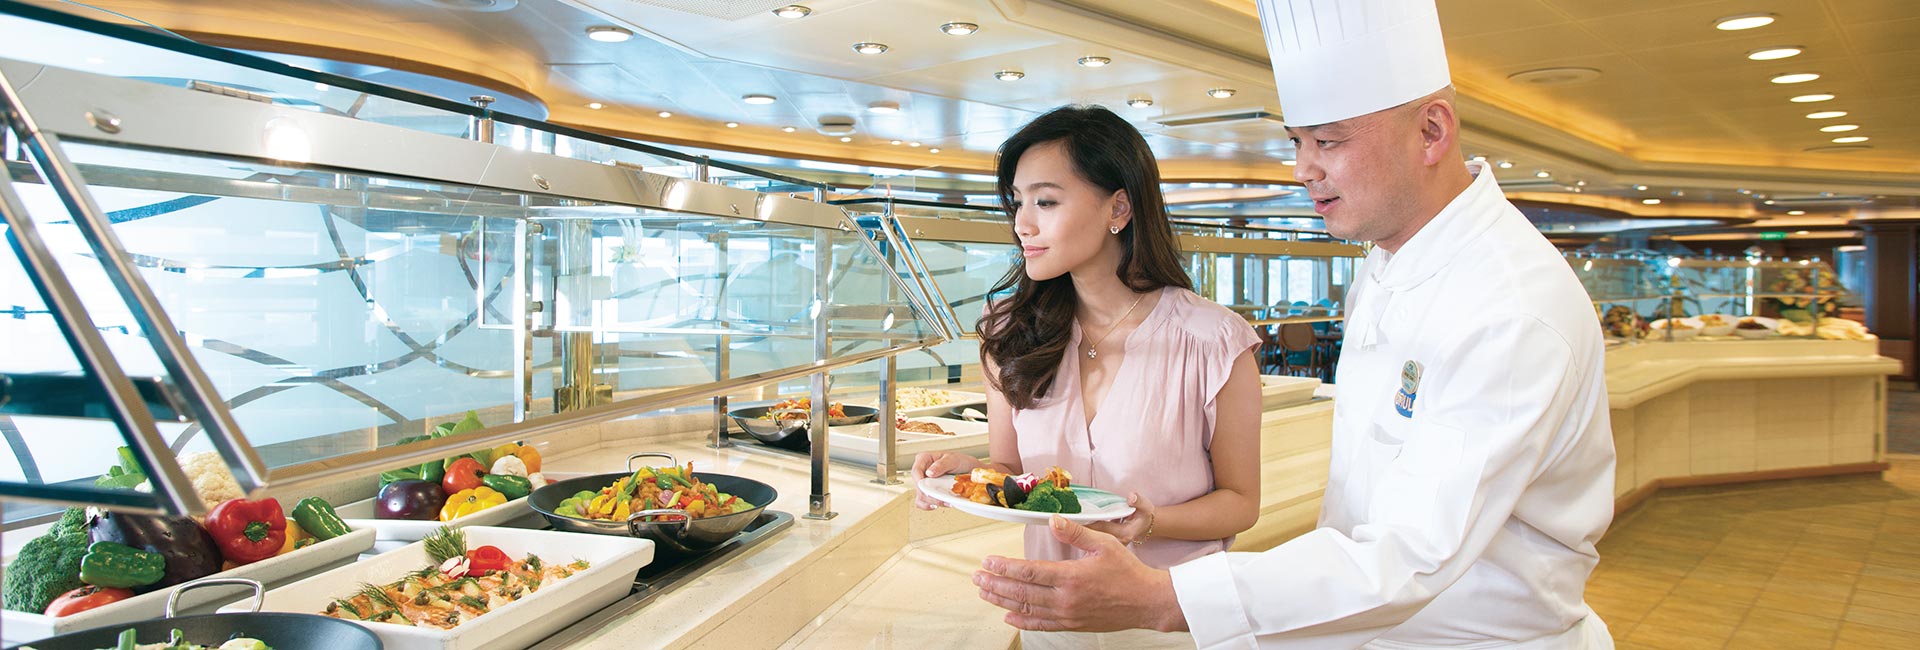 Cruise Ship Chef Guiding A Customer